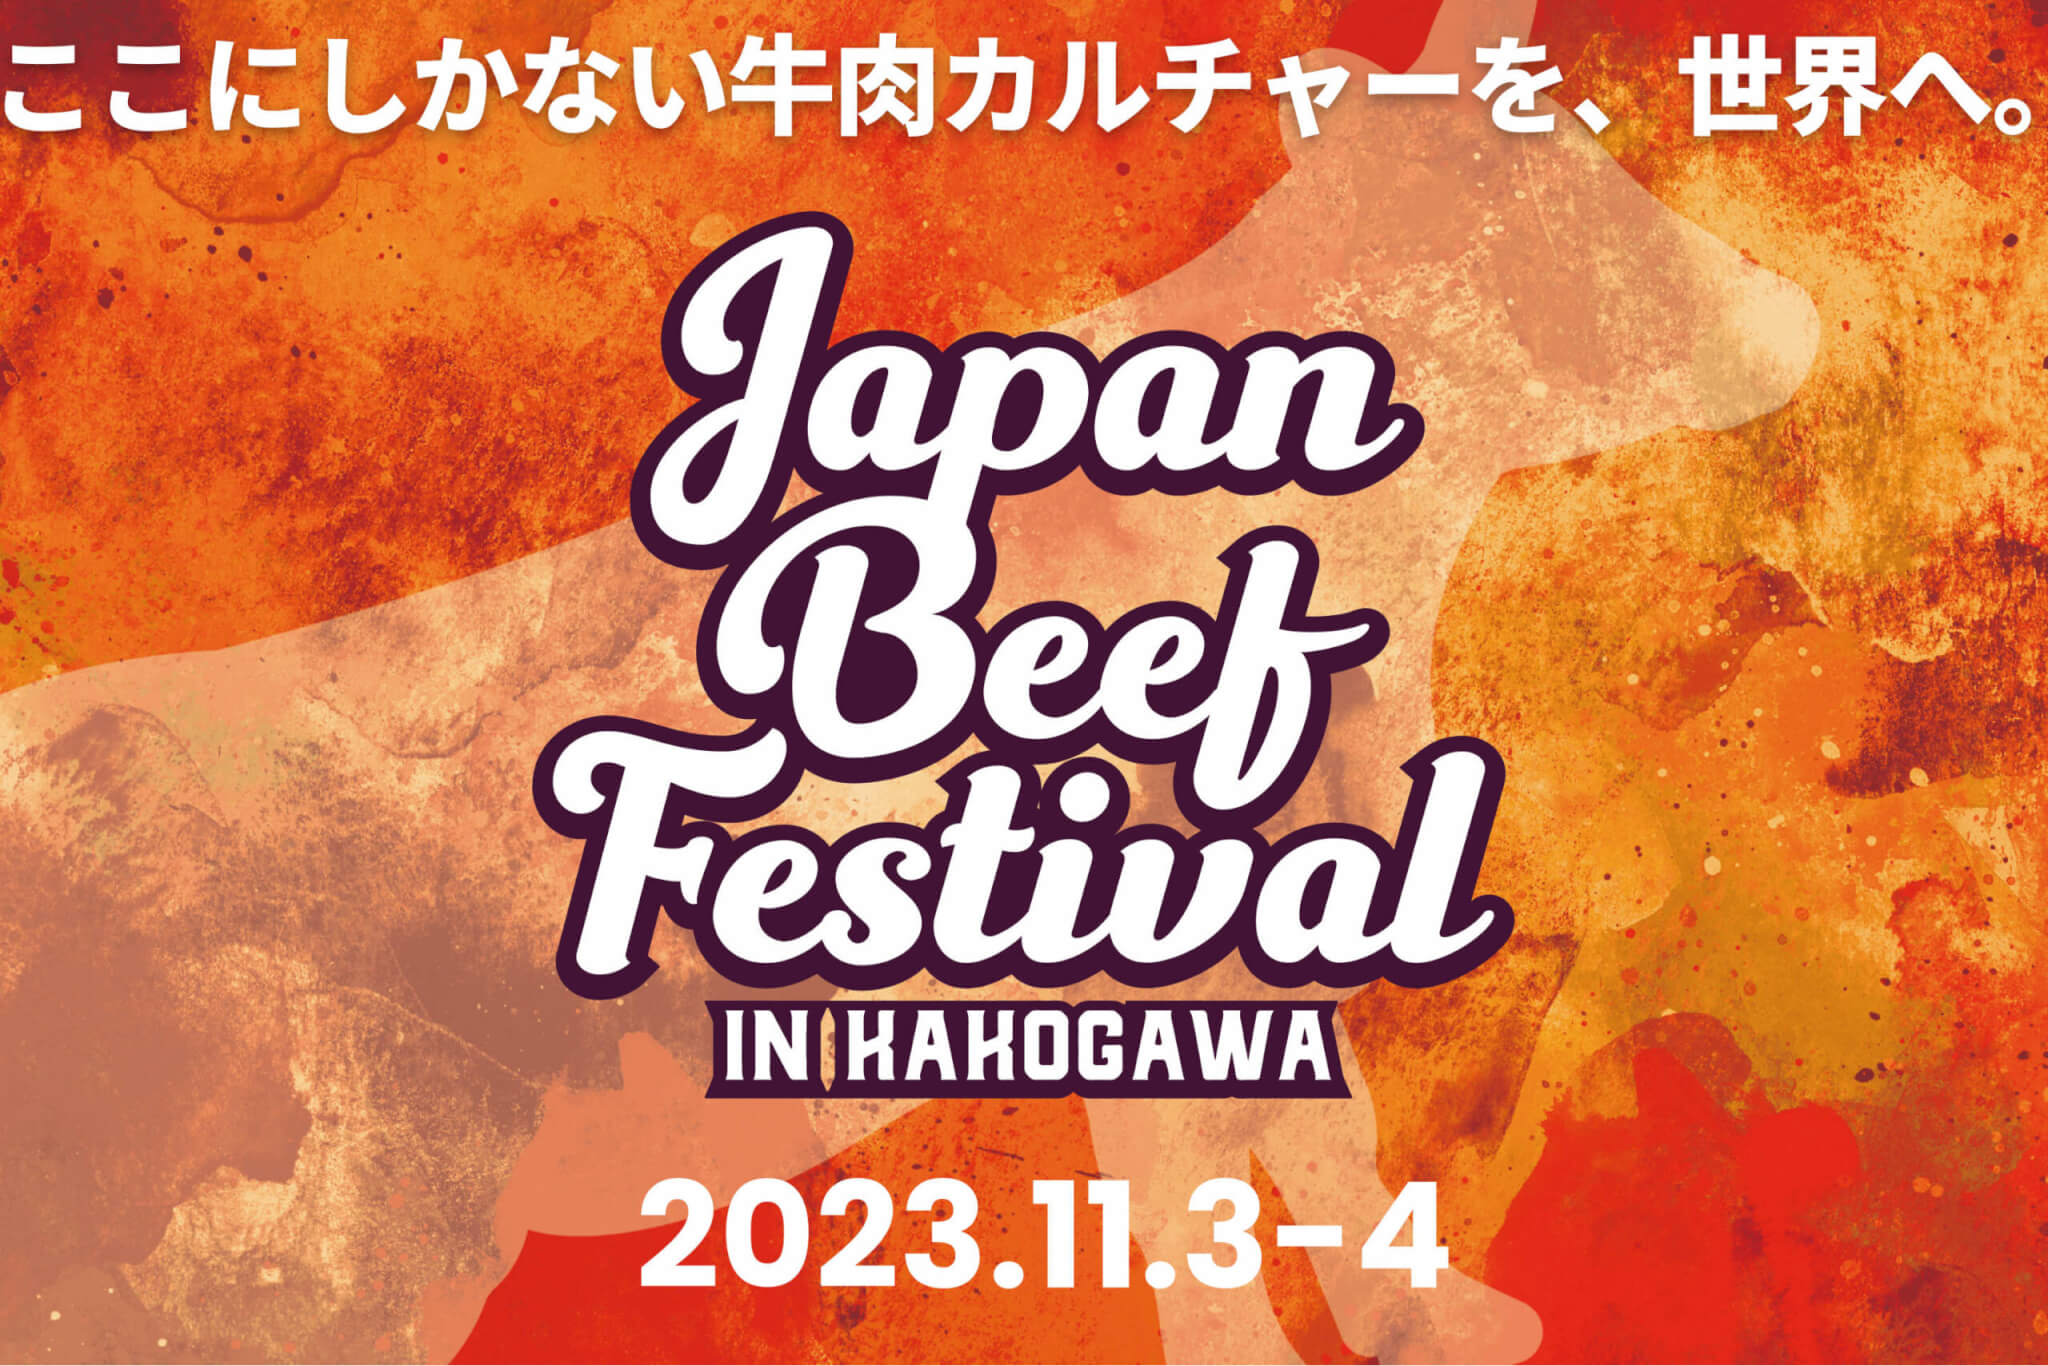 JAPAN BEEF FESTIVAL in Kakogawaイメージい